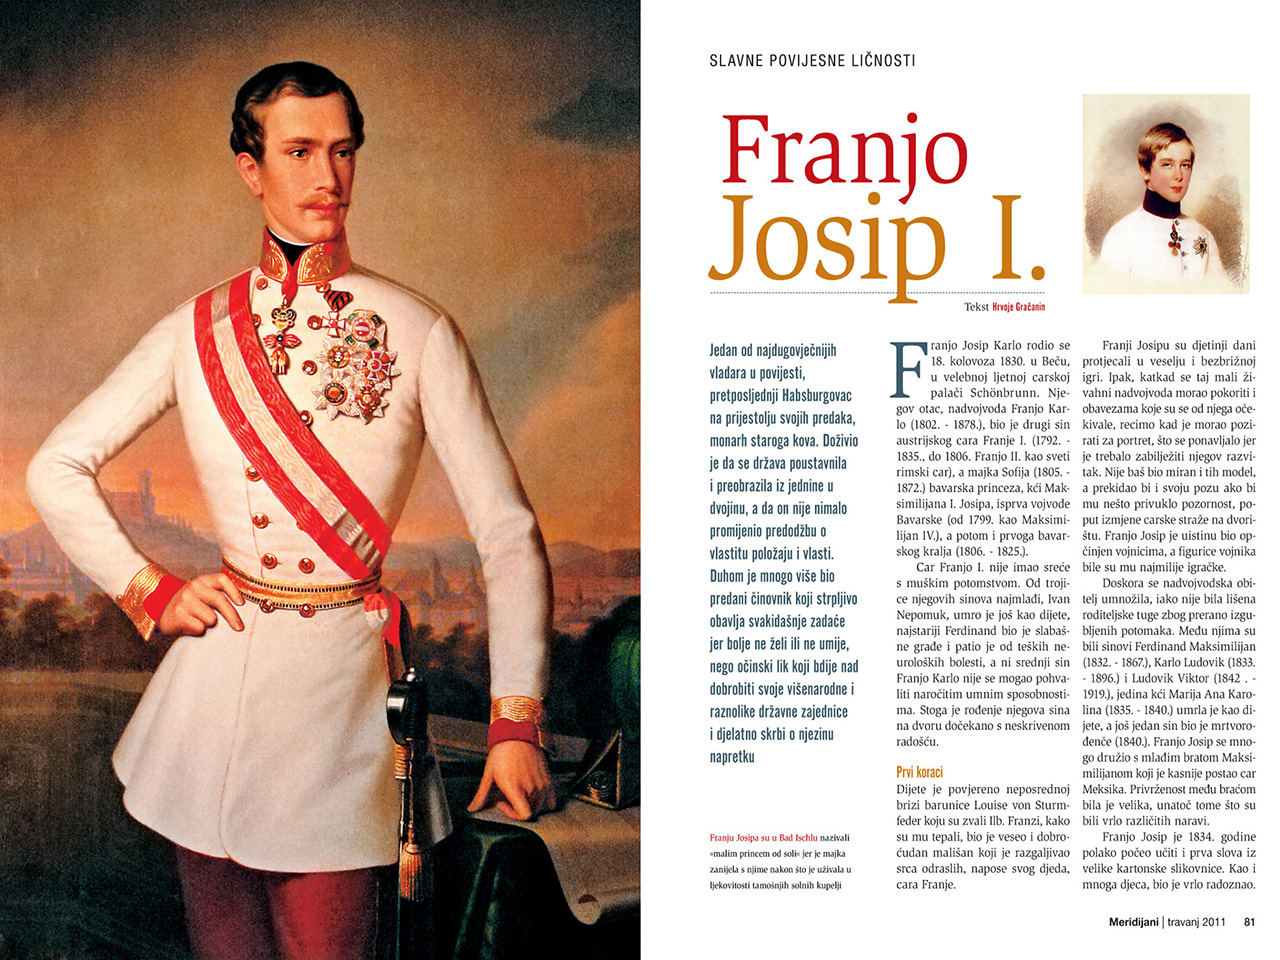 Prikaz članka o Franji Josipu I. u časopisu Meridijani